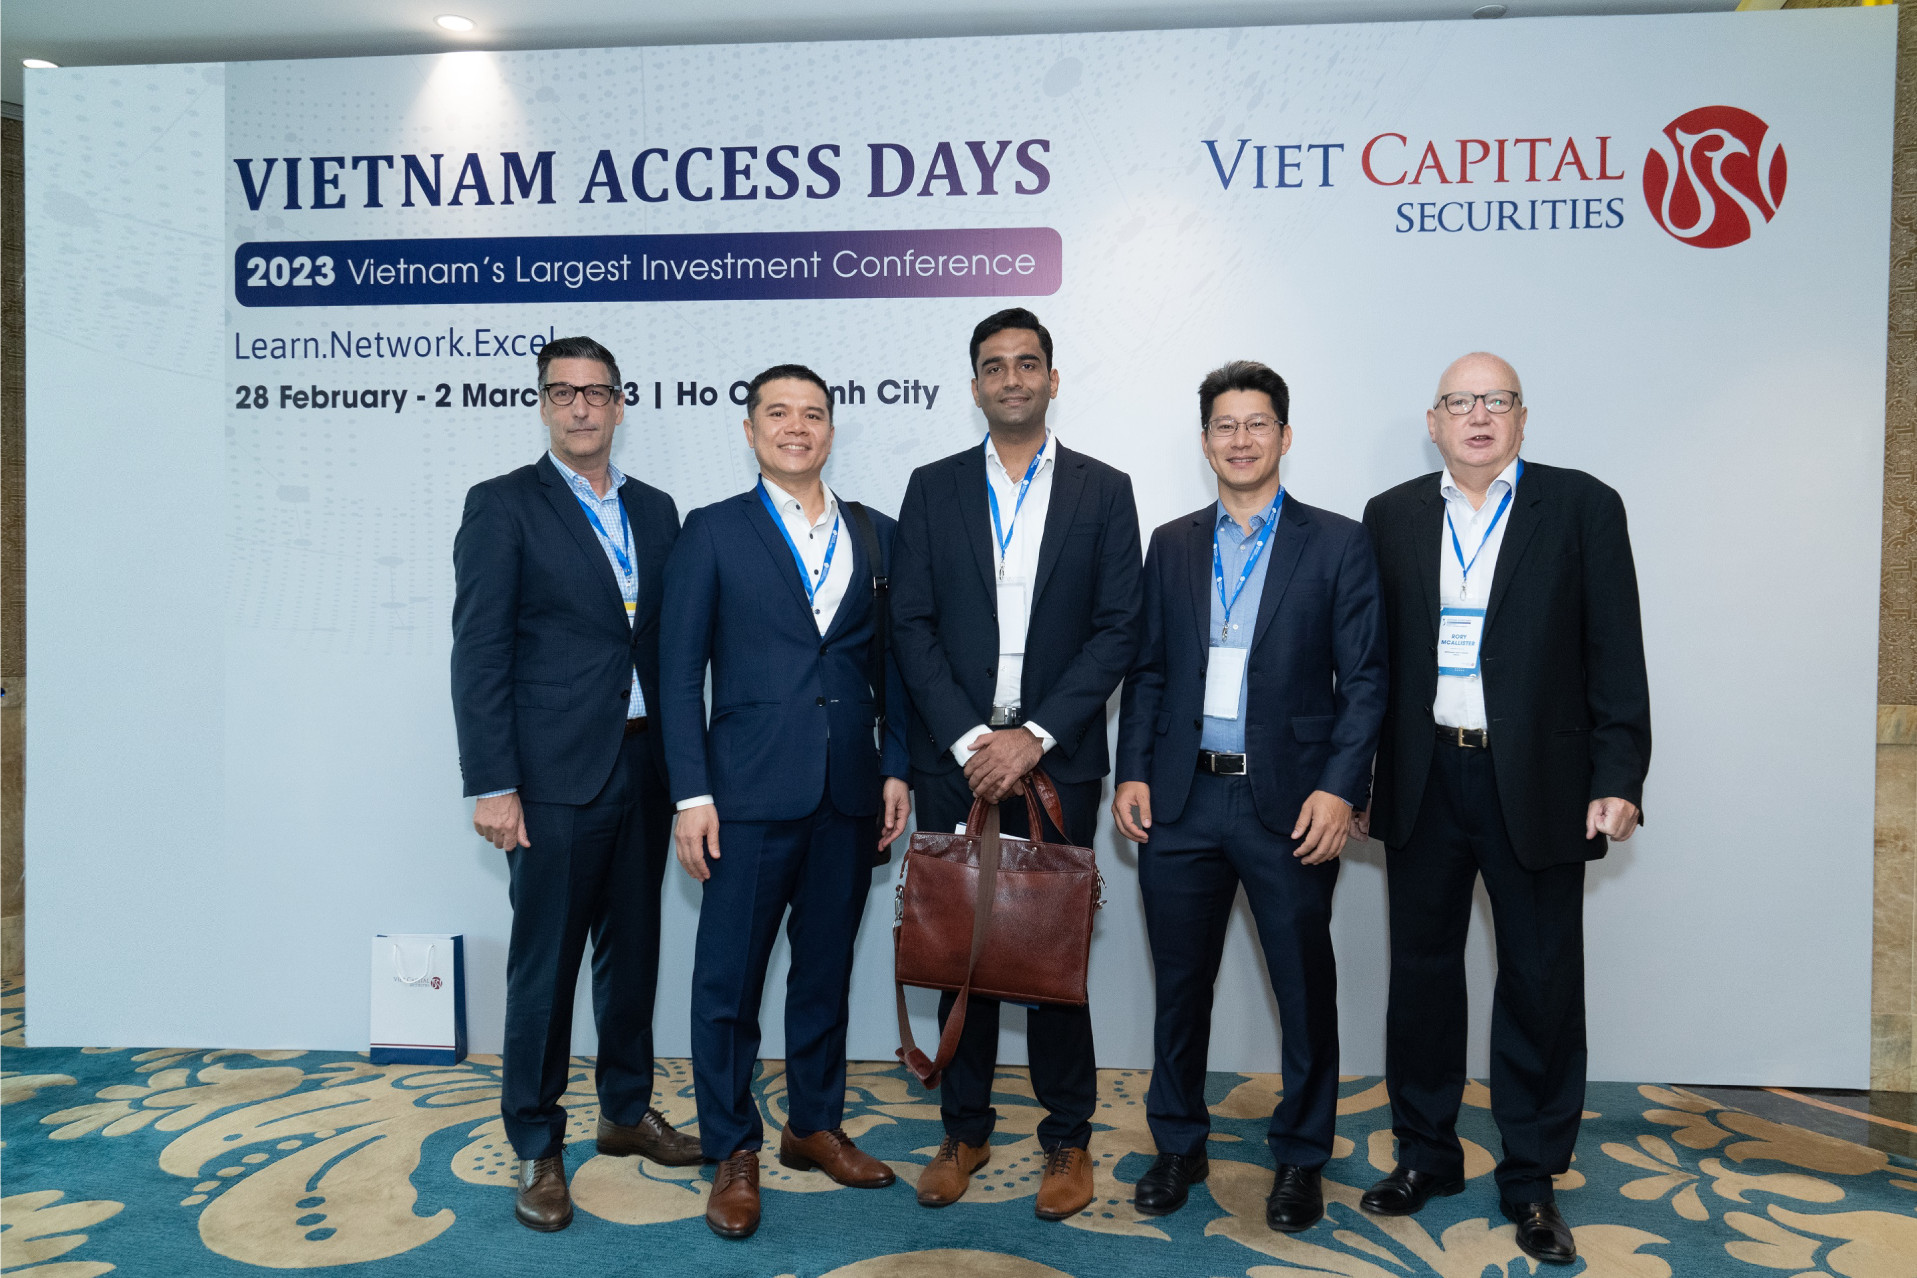 Vietnam Access Days 2023 - Điểm hẹn của các doanh nghiệp hàng đầu Việt Nam - Ảnh 2.